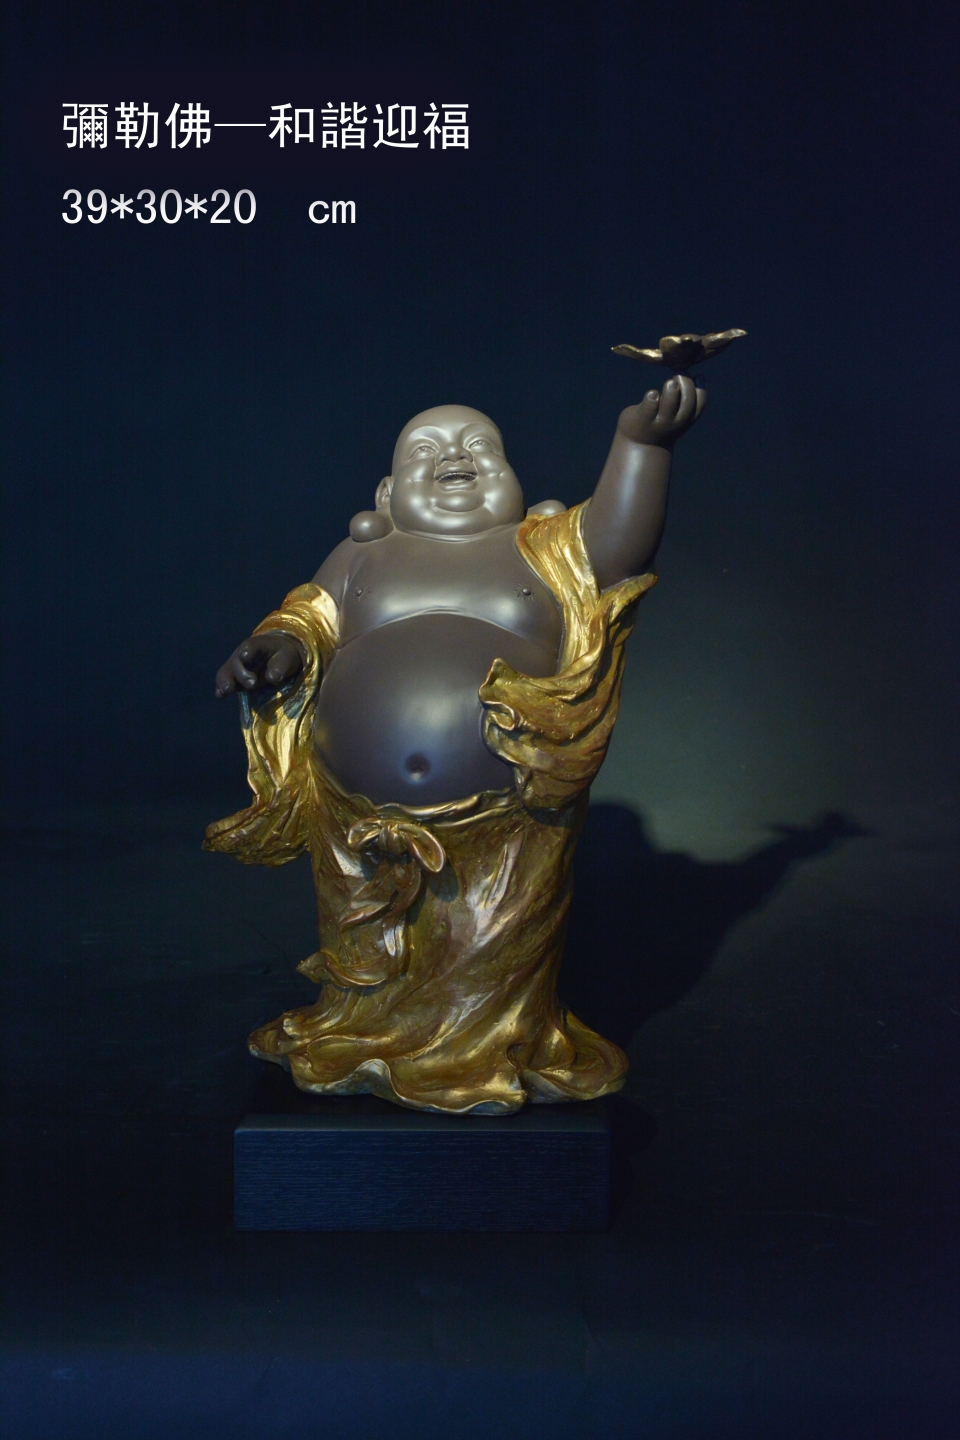 銅雕系列-葉國鐘老師作品-彌勒佛(和諧迎福)-維納斯藝術提供